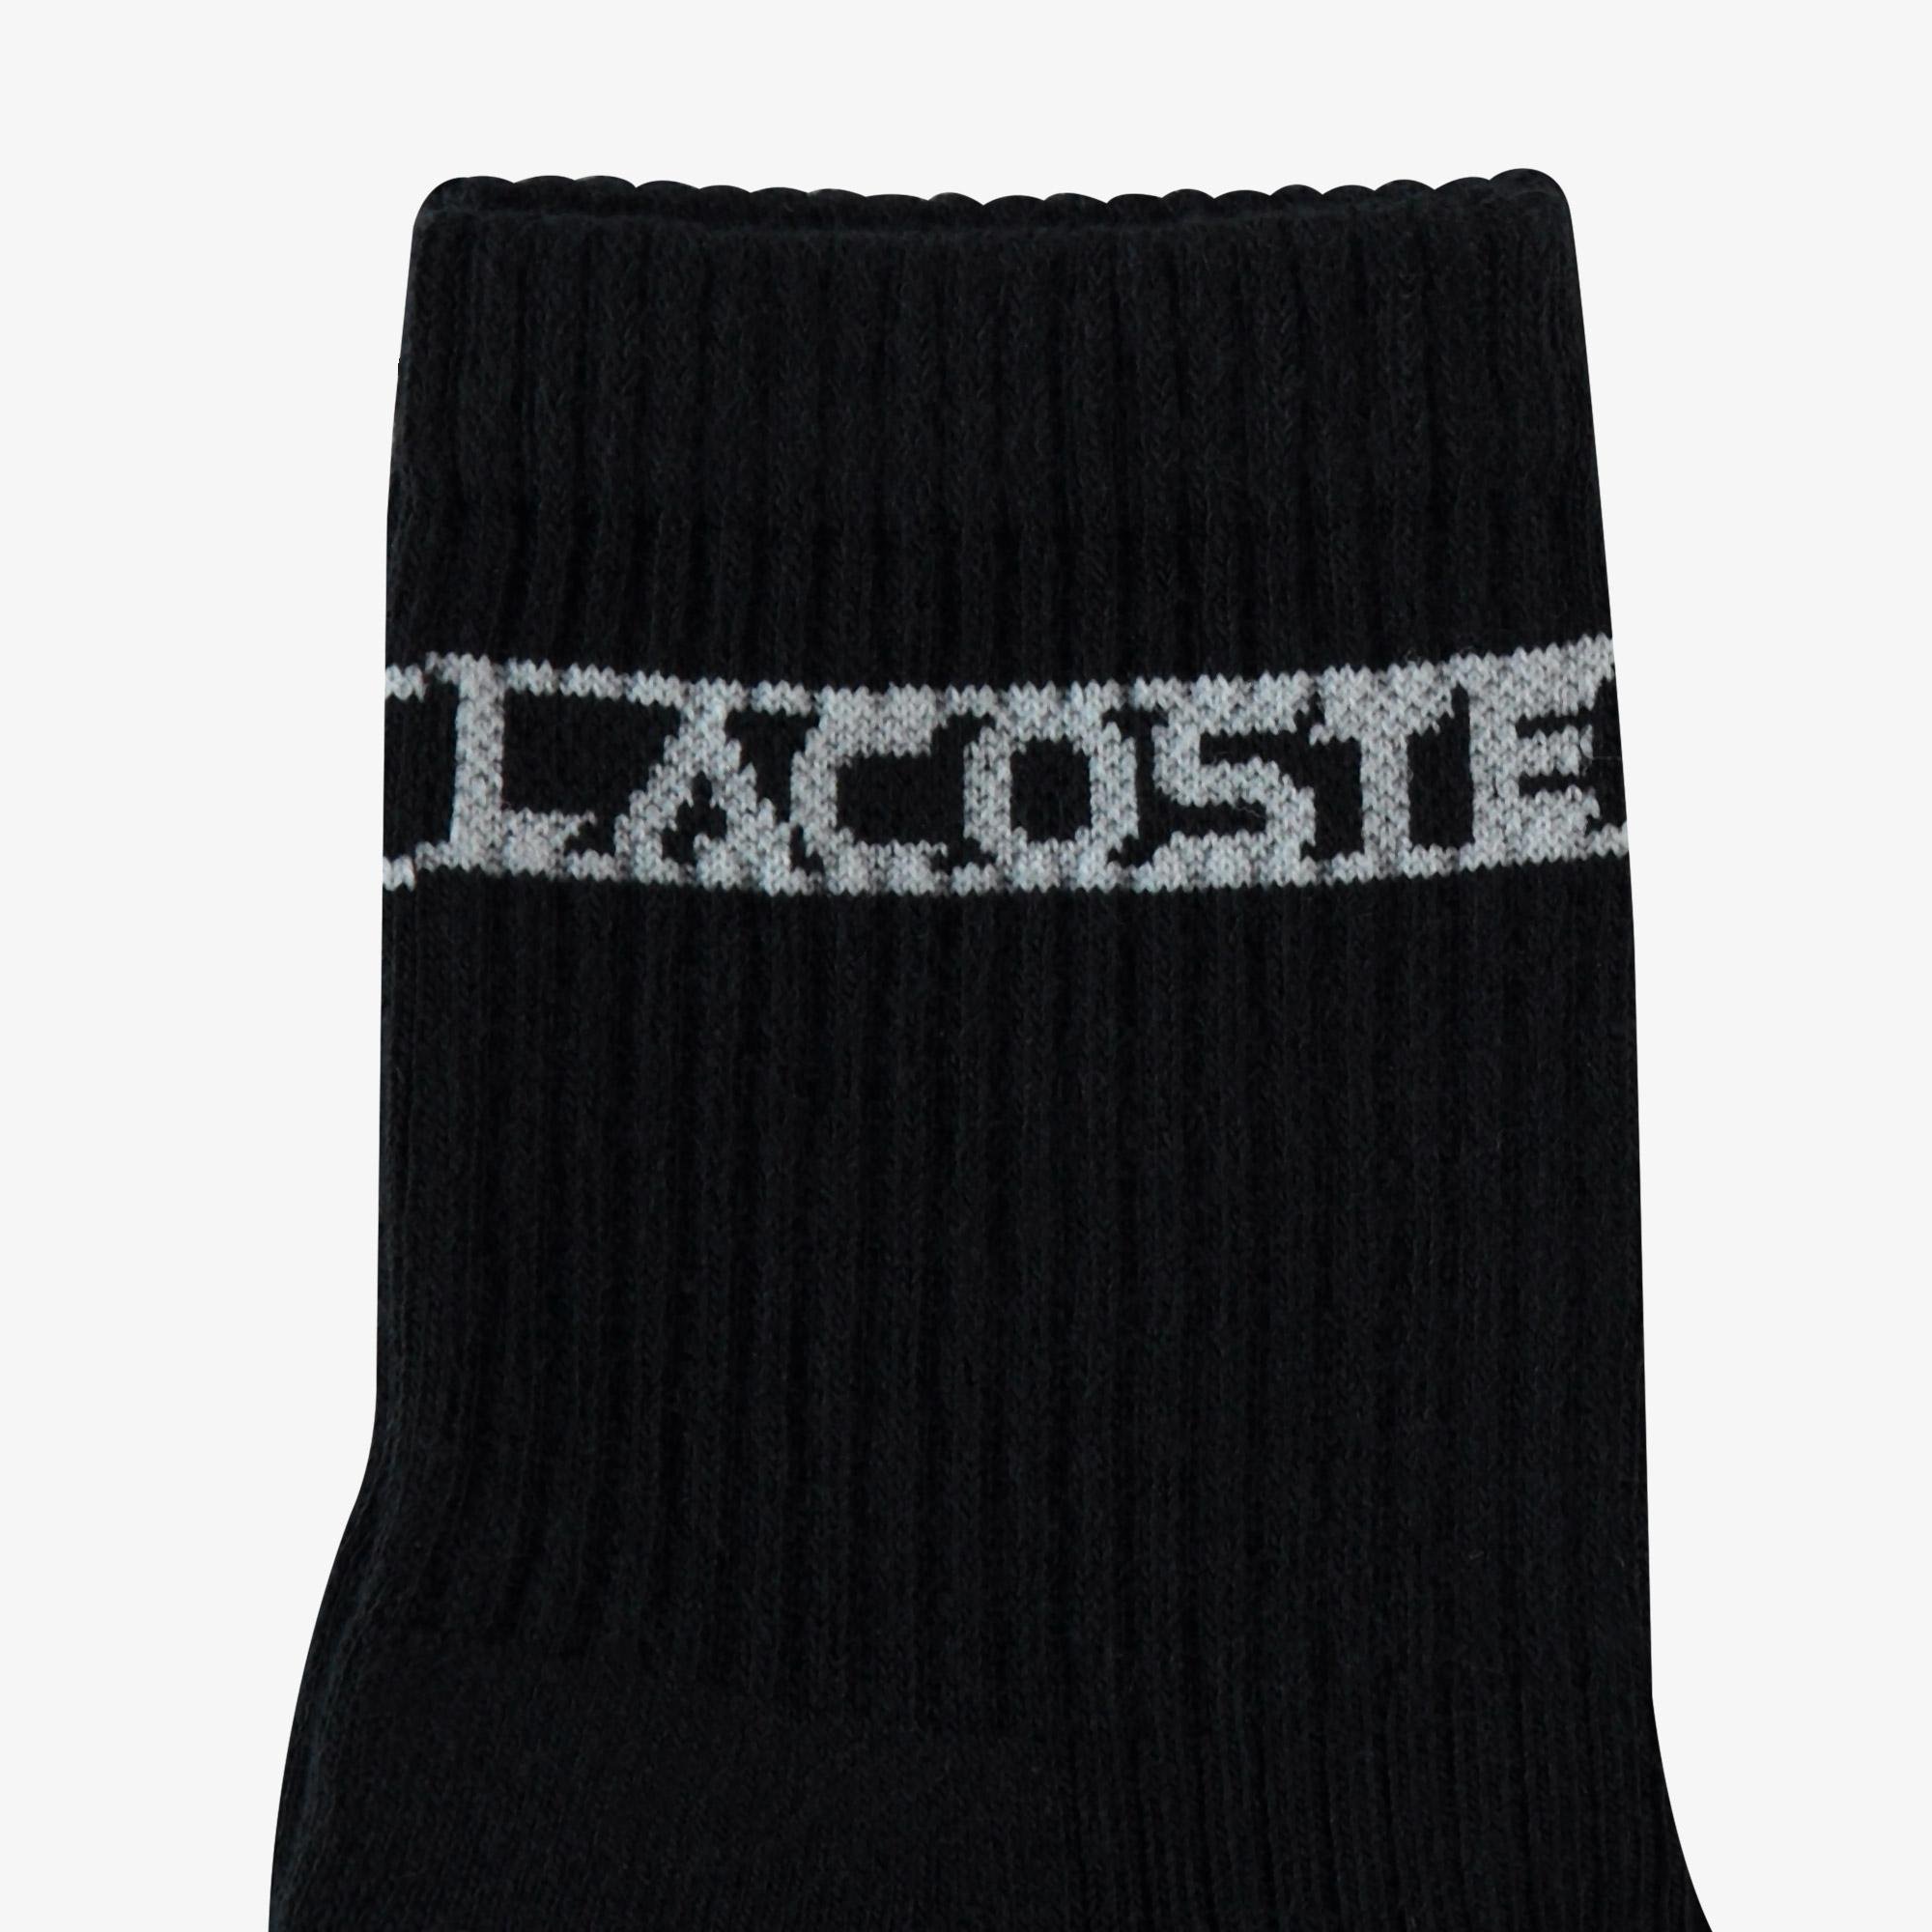 Lacoste Unisex Baskılı Siyah Çorap